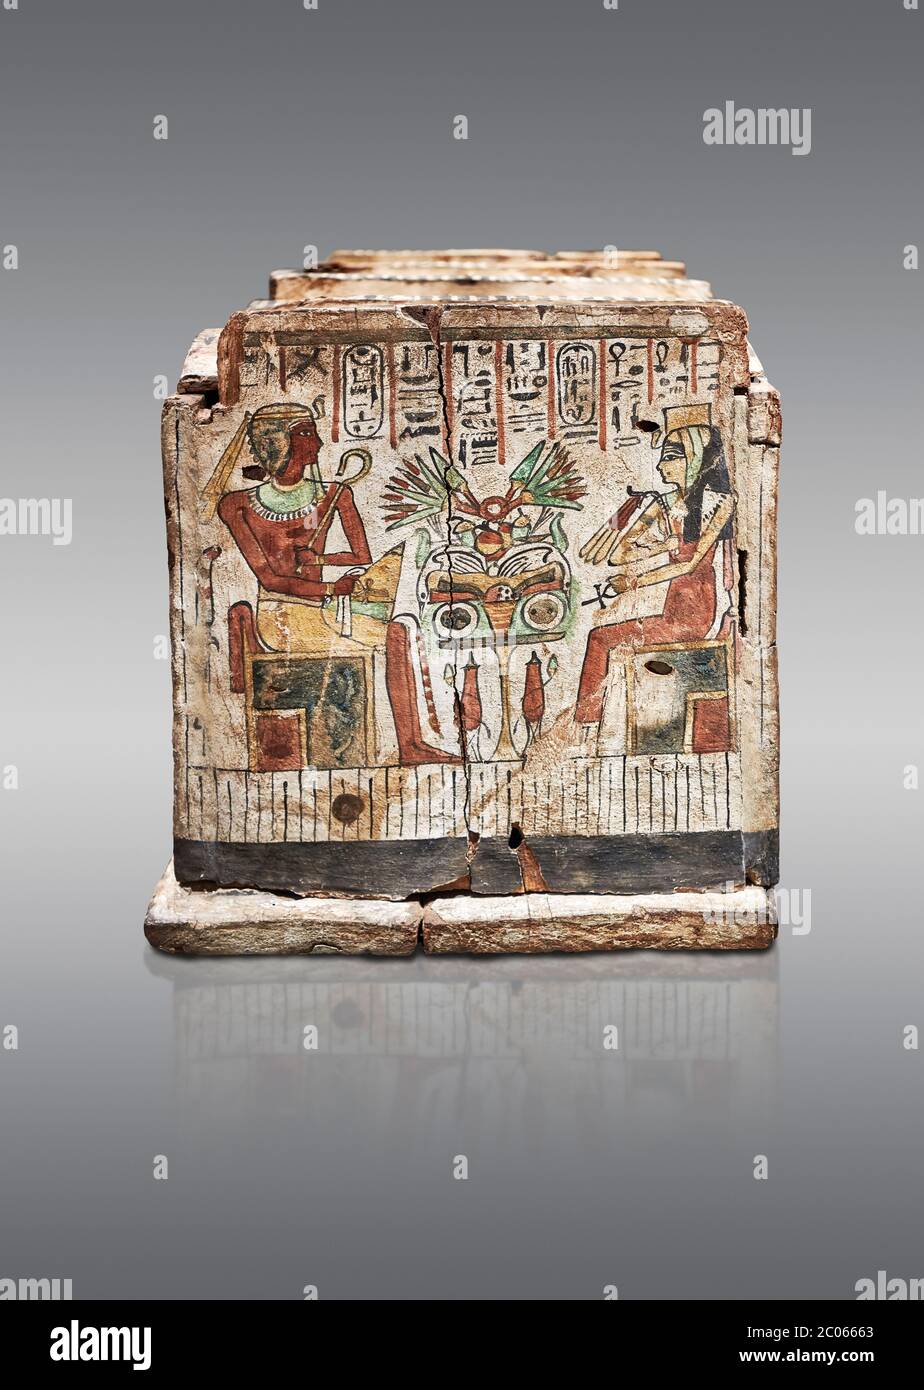 Ancienne boîte de shabti égyptienne, bois, période intermédiaire, 21e-22e dynastie (1076-746 av. J.-C.), Thèbes, Musée égyptien, Turin. Fond gris. Étage 1 roo Banque D'Images